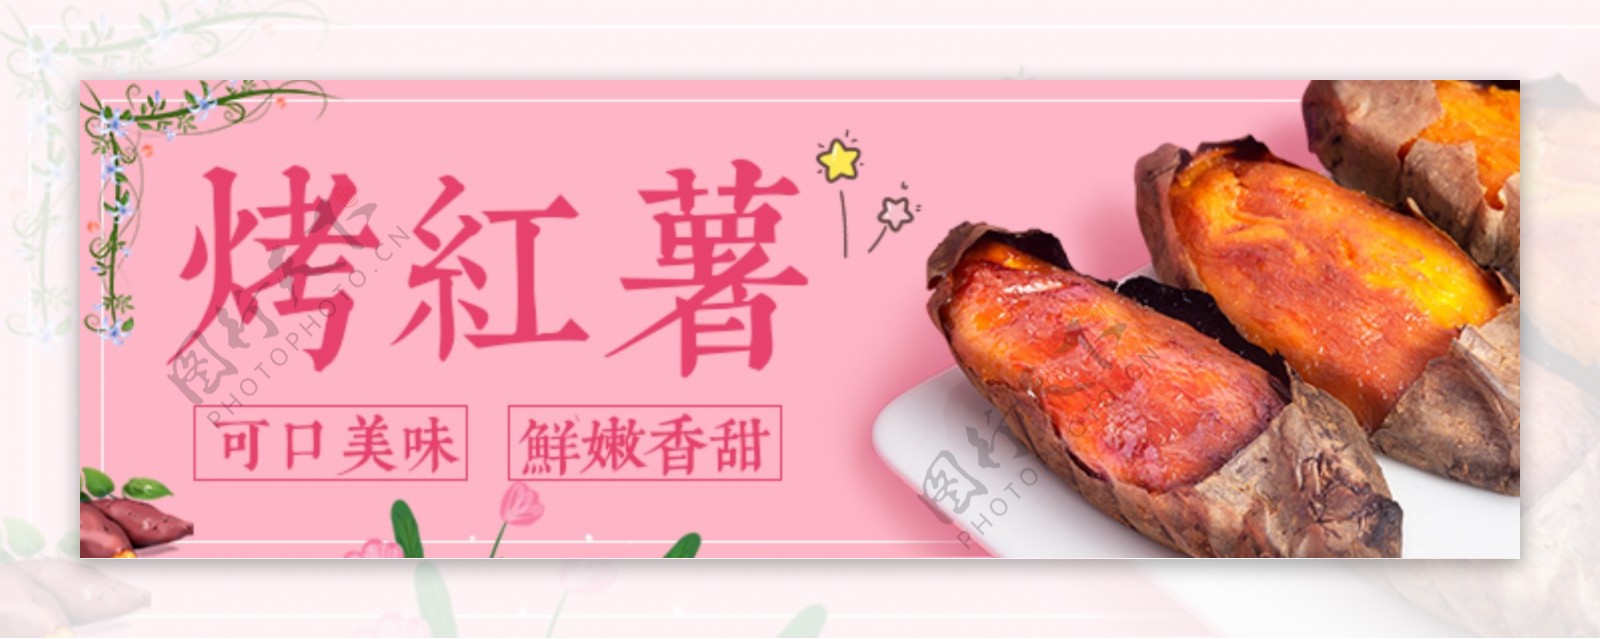 烤红薯banner